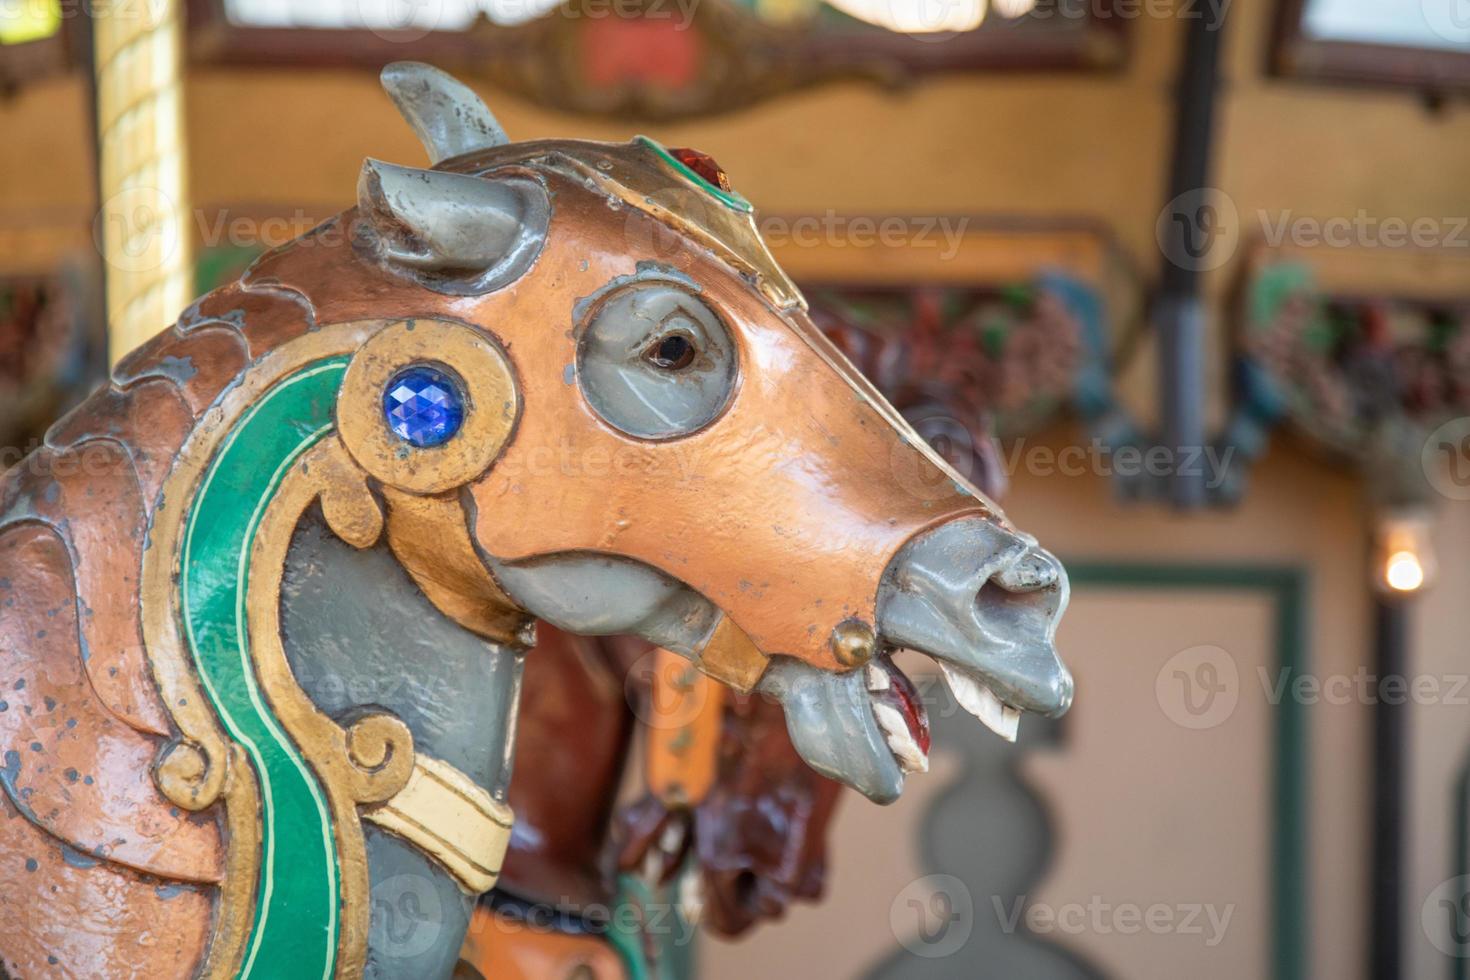 detalhes do cavalo do carrossel do parque de diversões foto